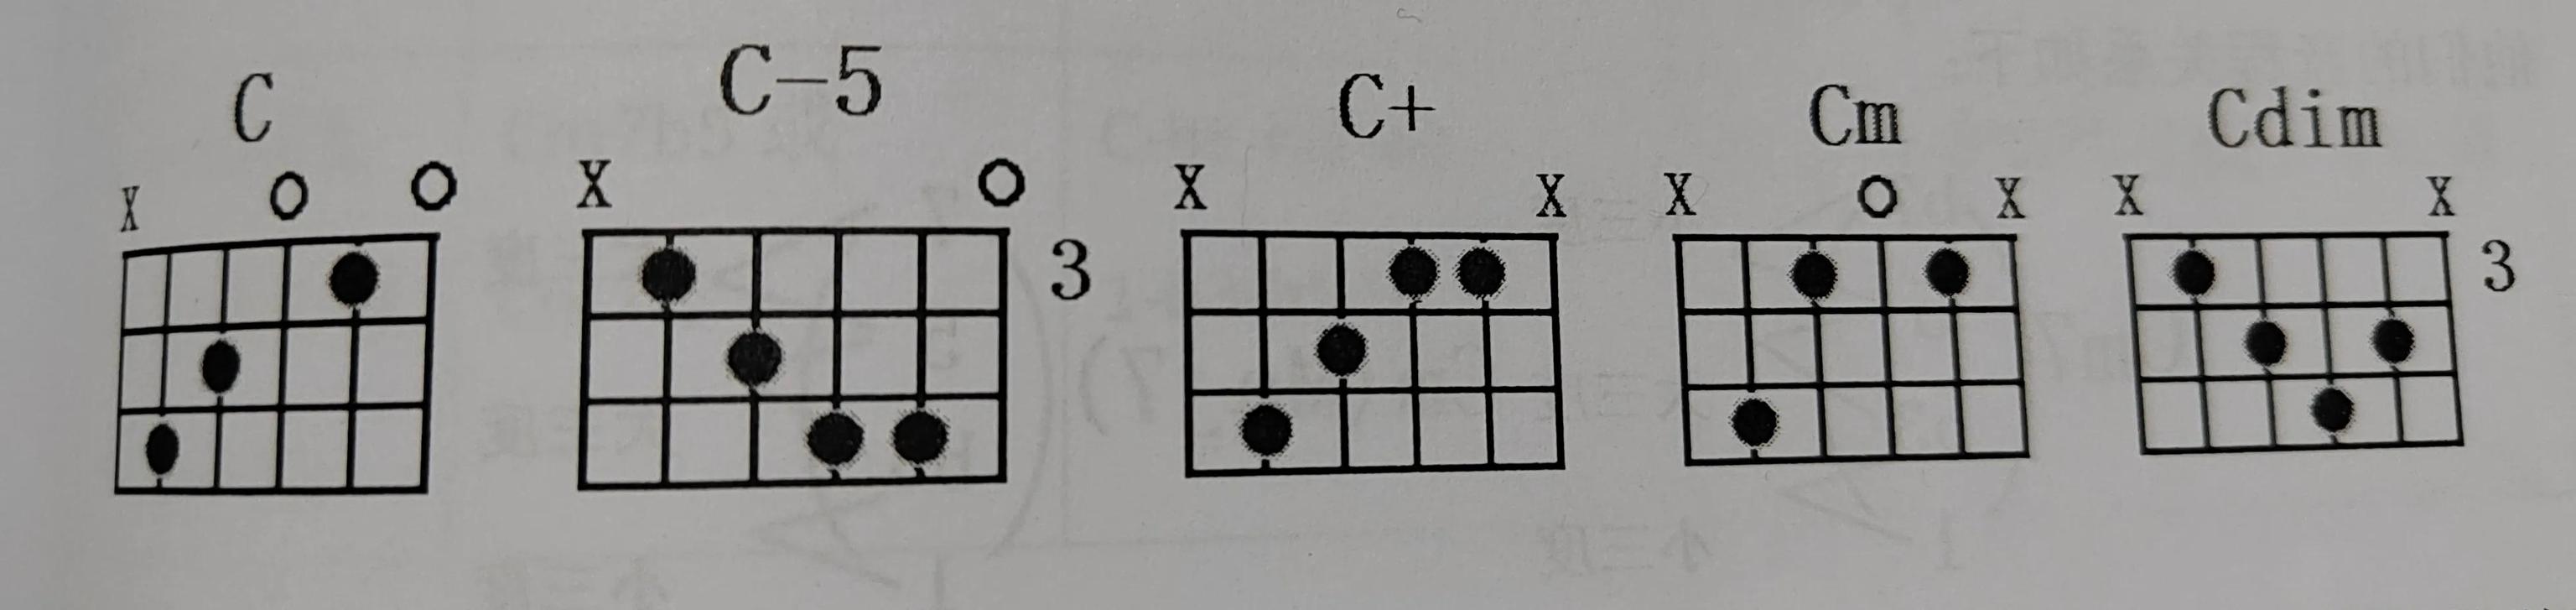 7和弦和3和弦的不同点,7和弦怎么区分大七度小七度(3)